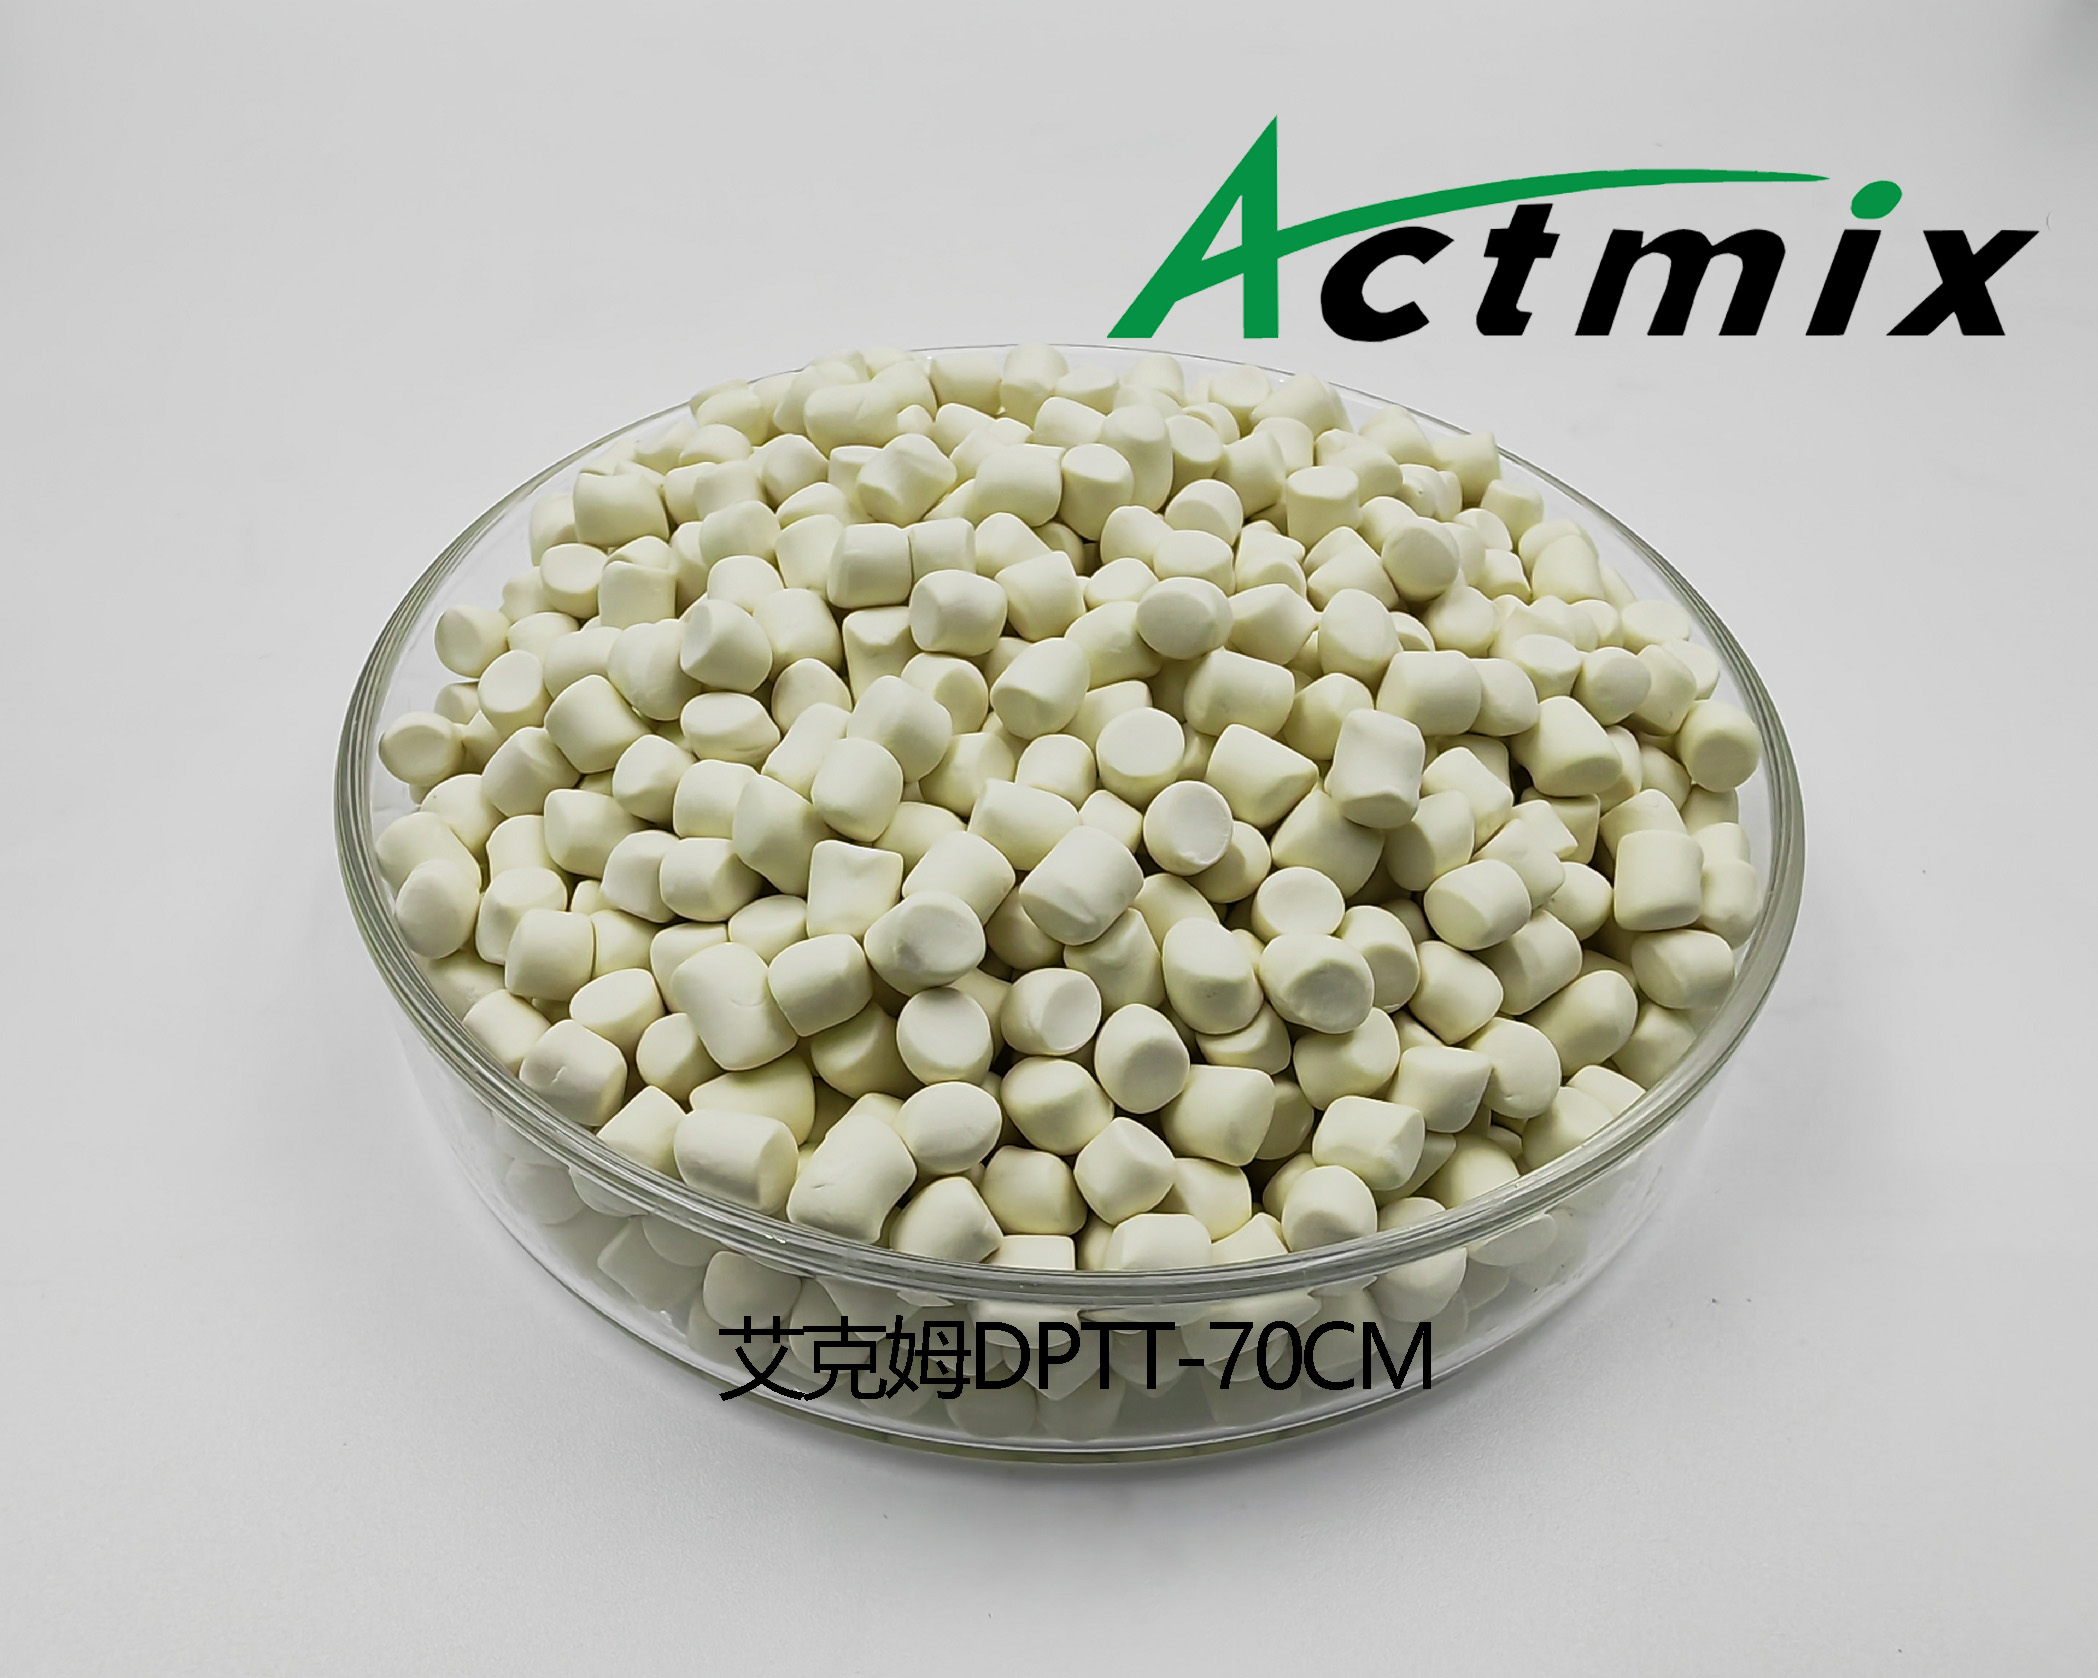 Actmix DPTT-70CM